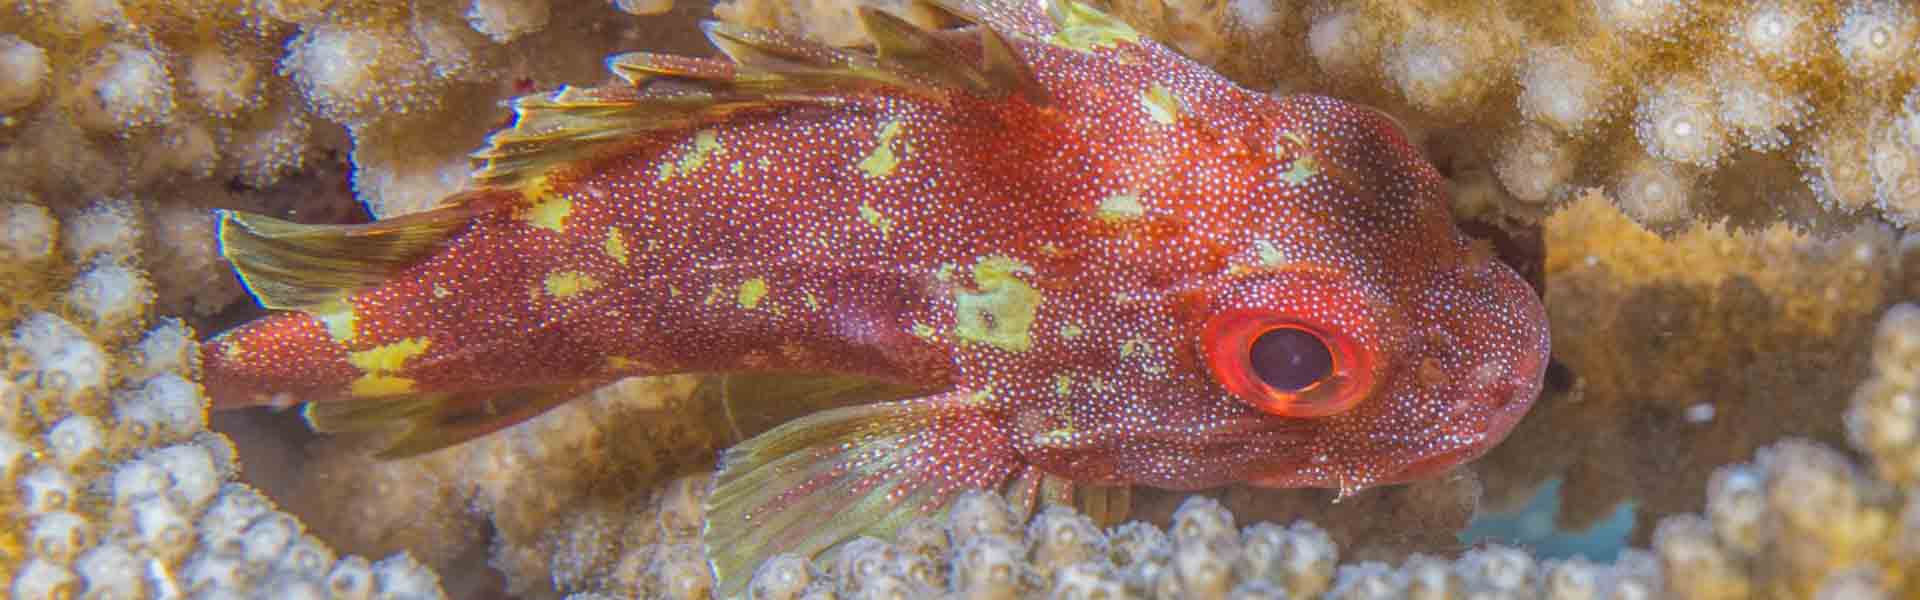 The Yellowspotted Scorpionfish